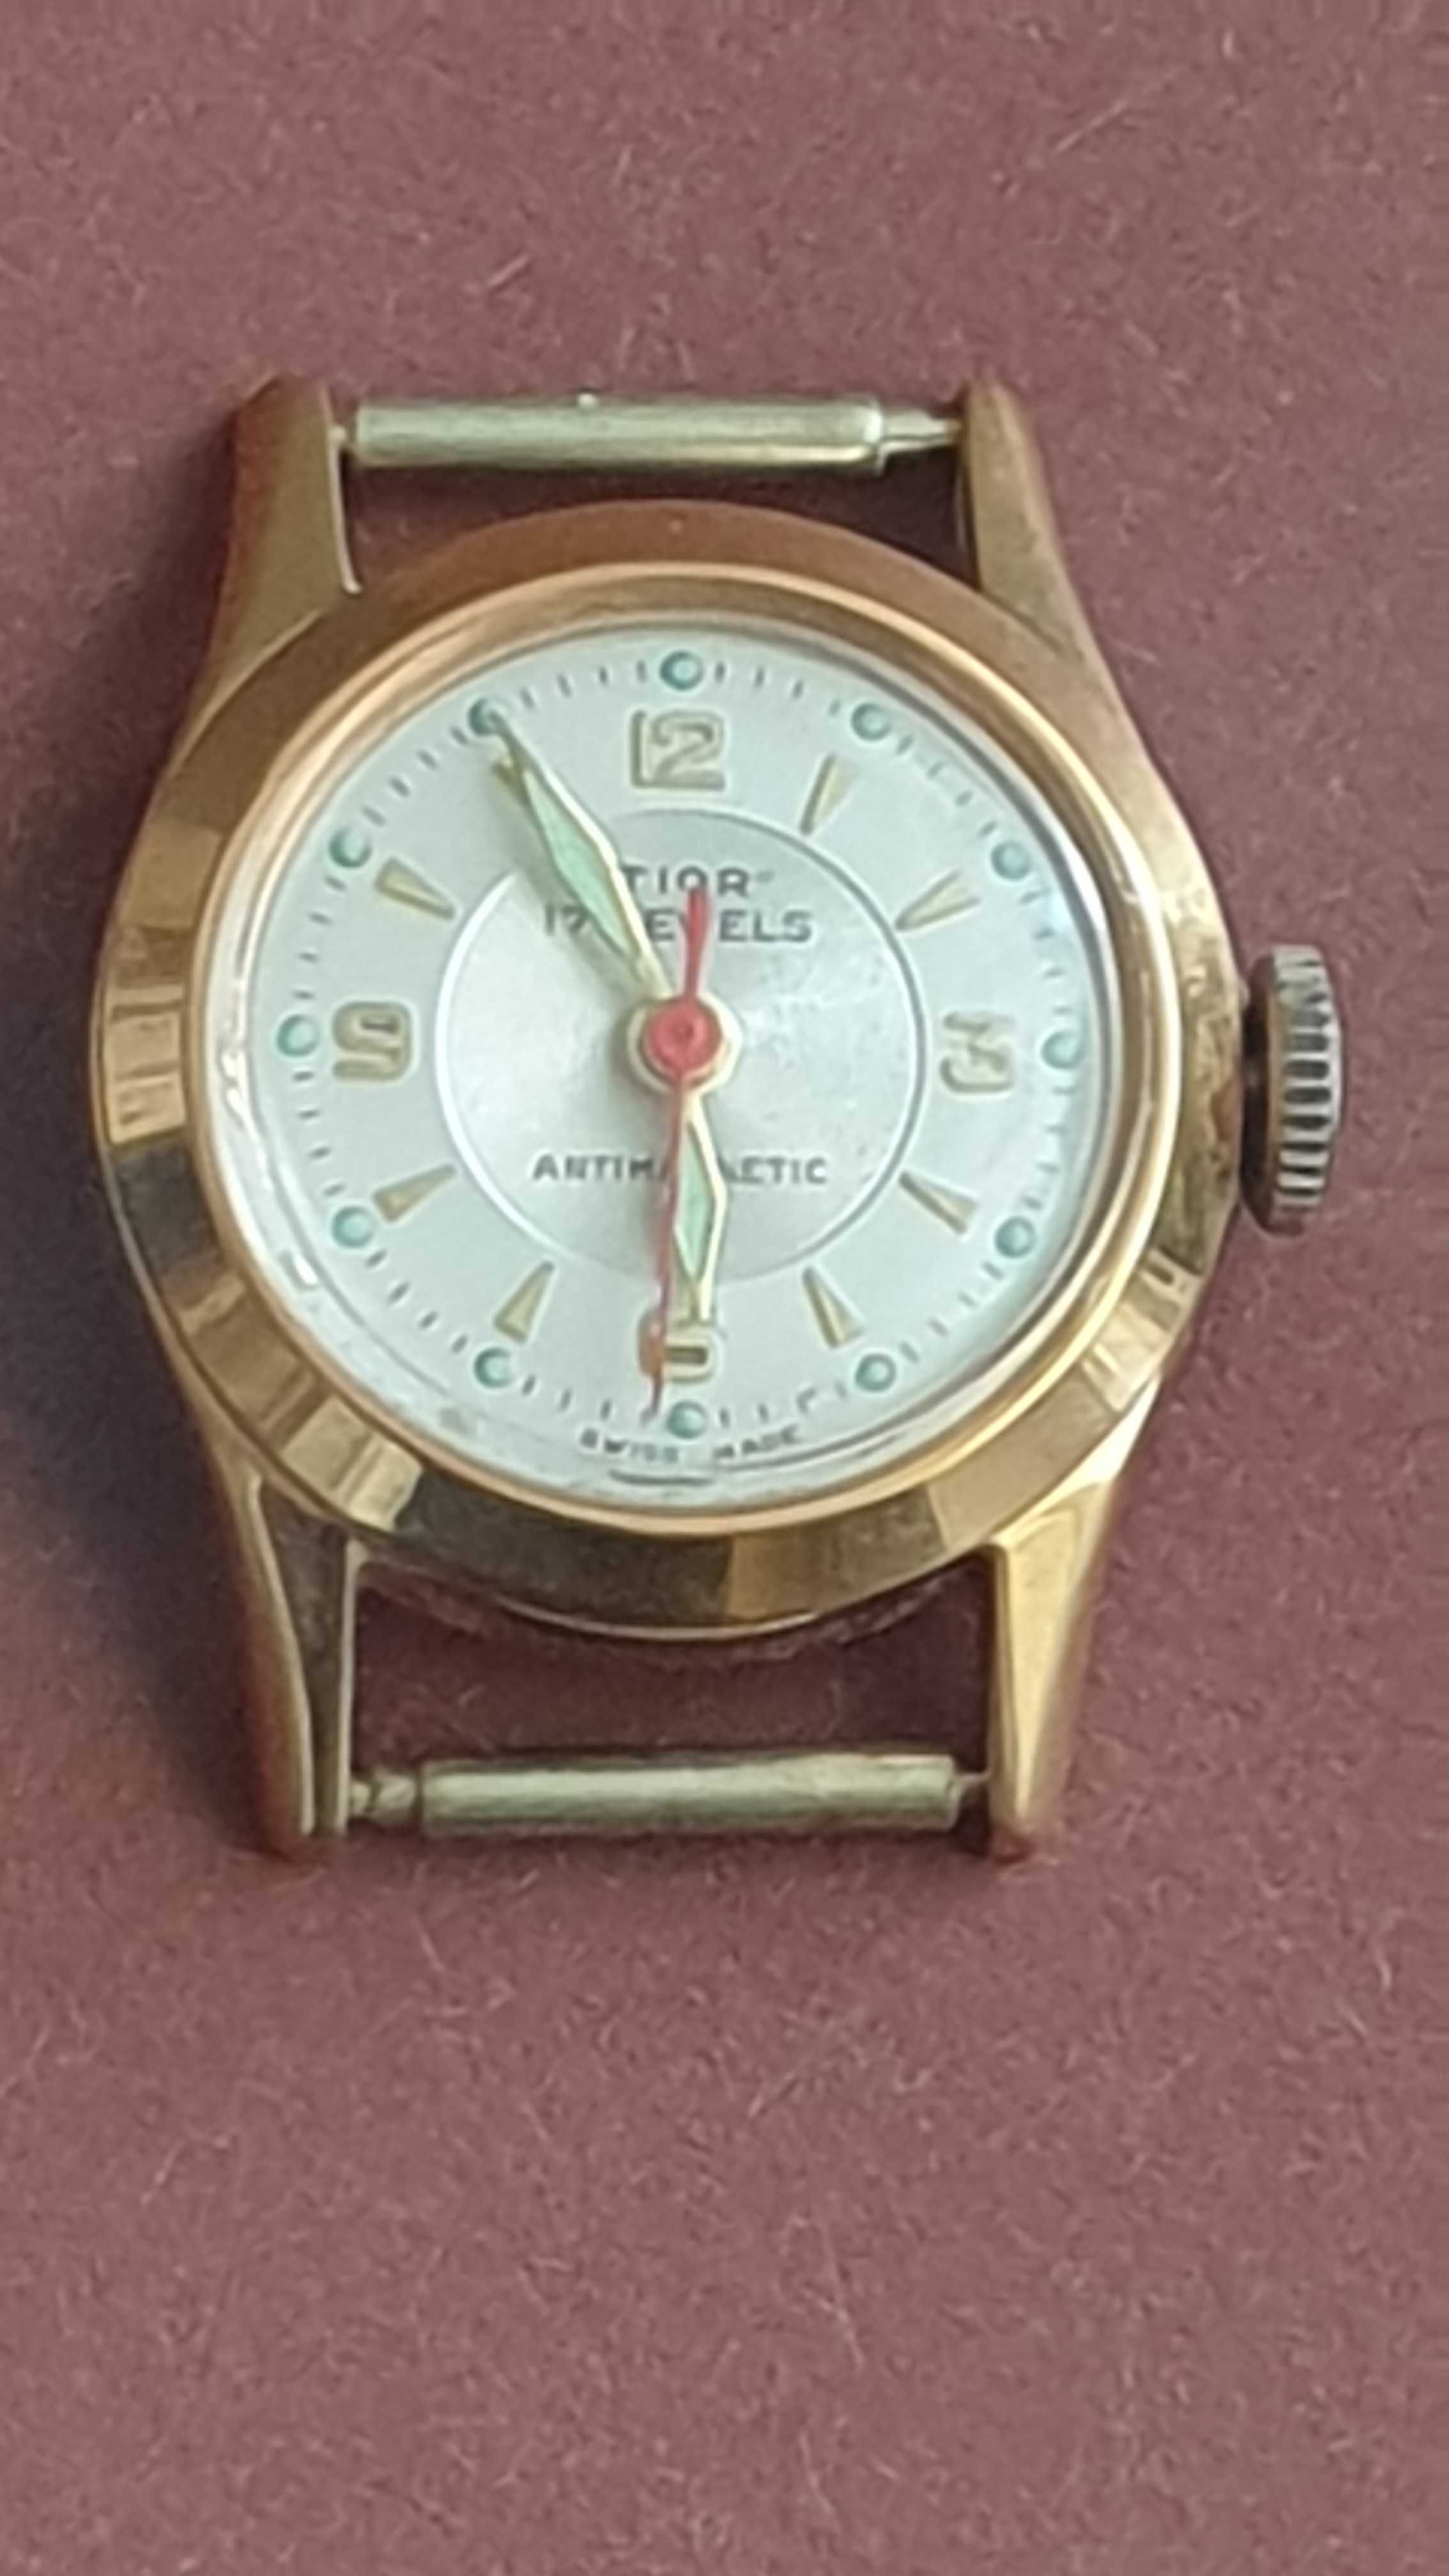 Часы TIOR швейцария